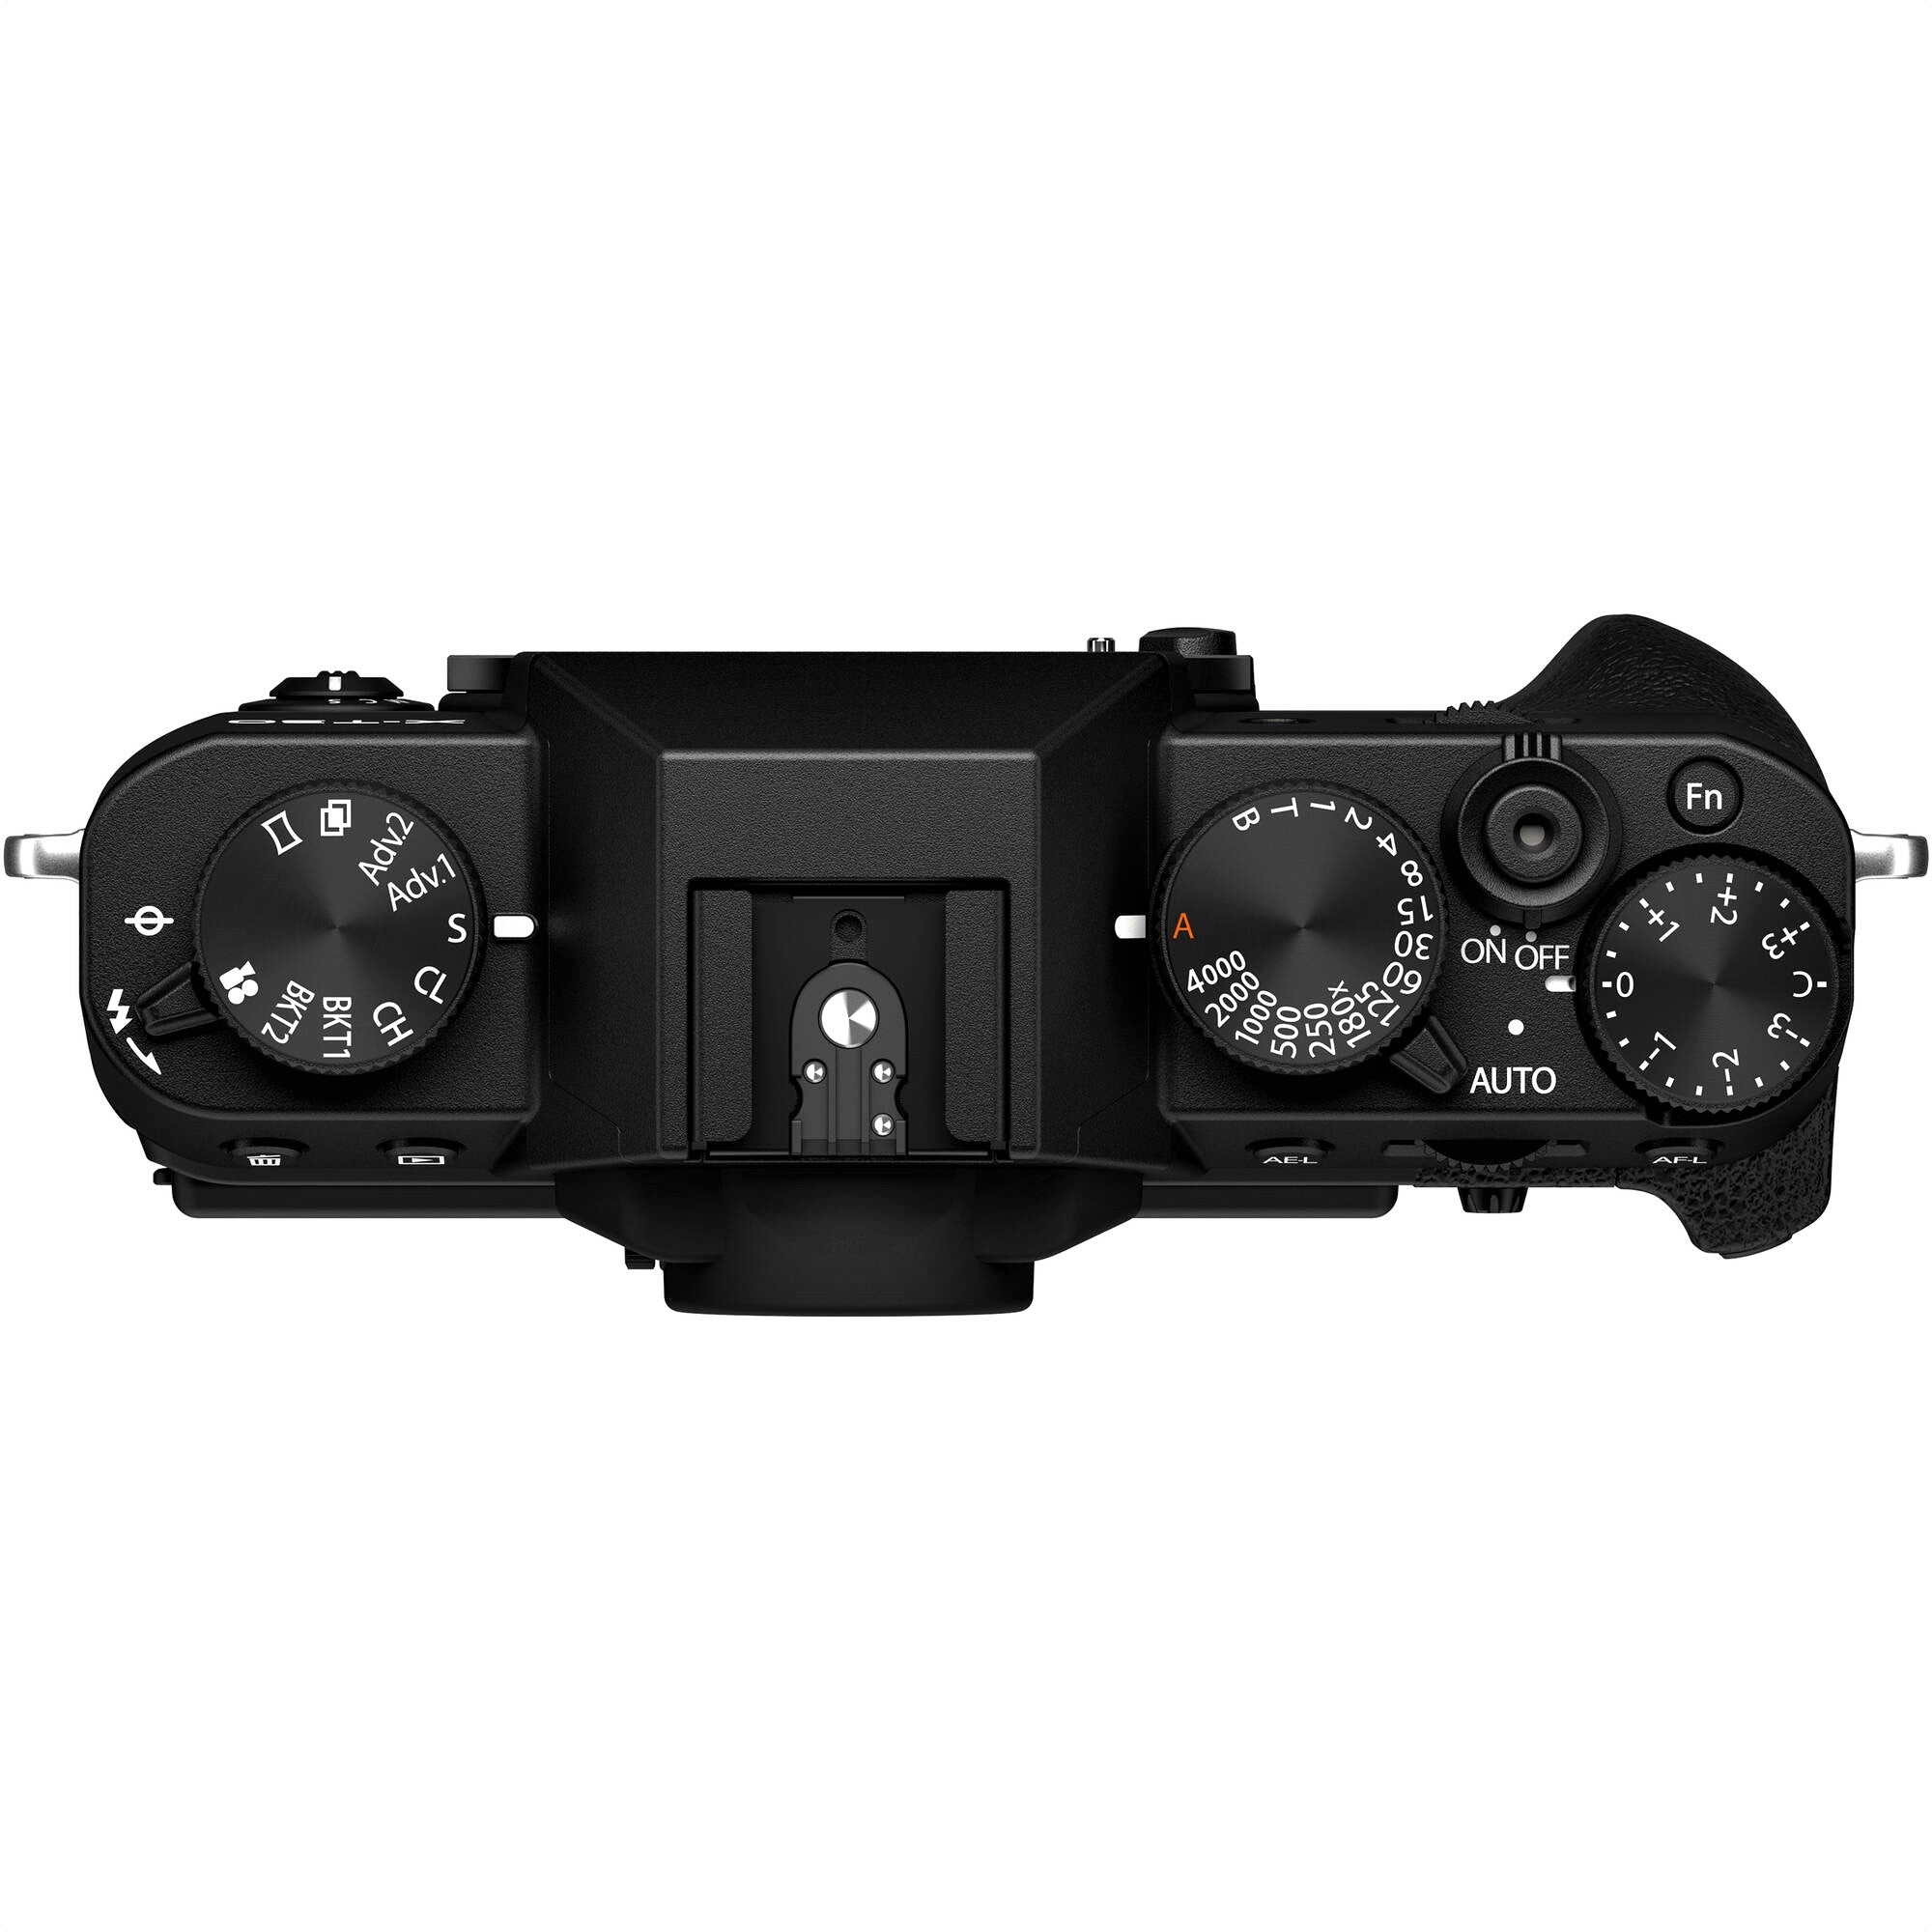 Fujifilm X-T30 II Mirrorless Camera (Black) - Top View